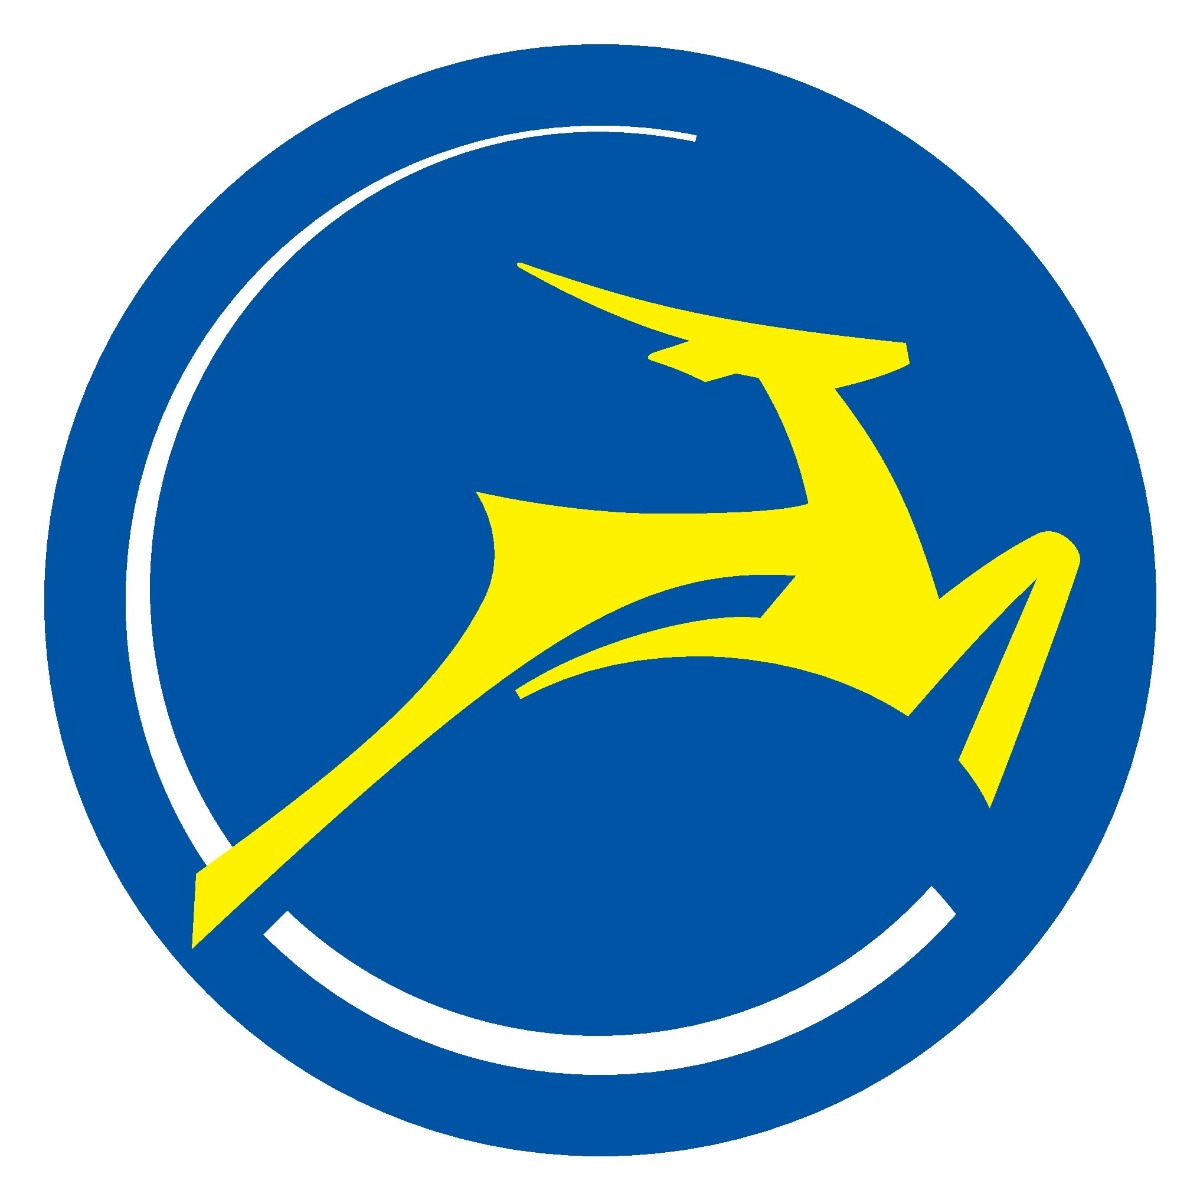 Logo van het fietsmerk Gazelle.